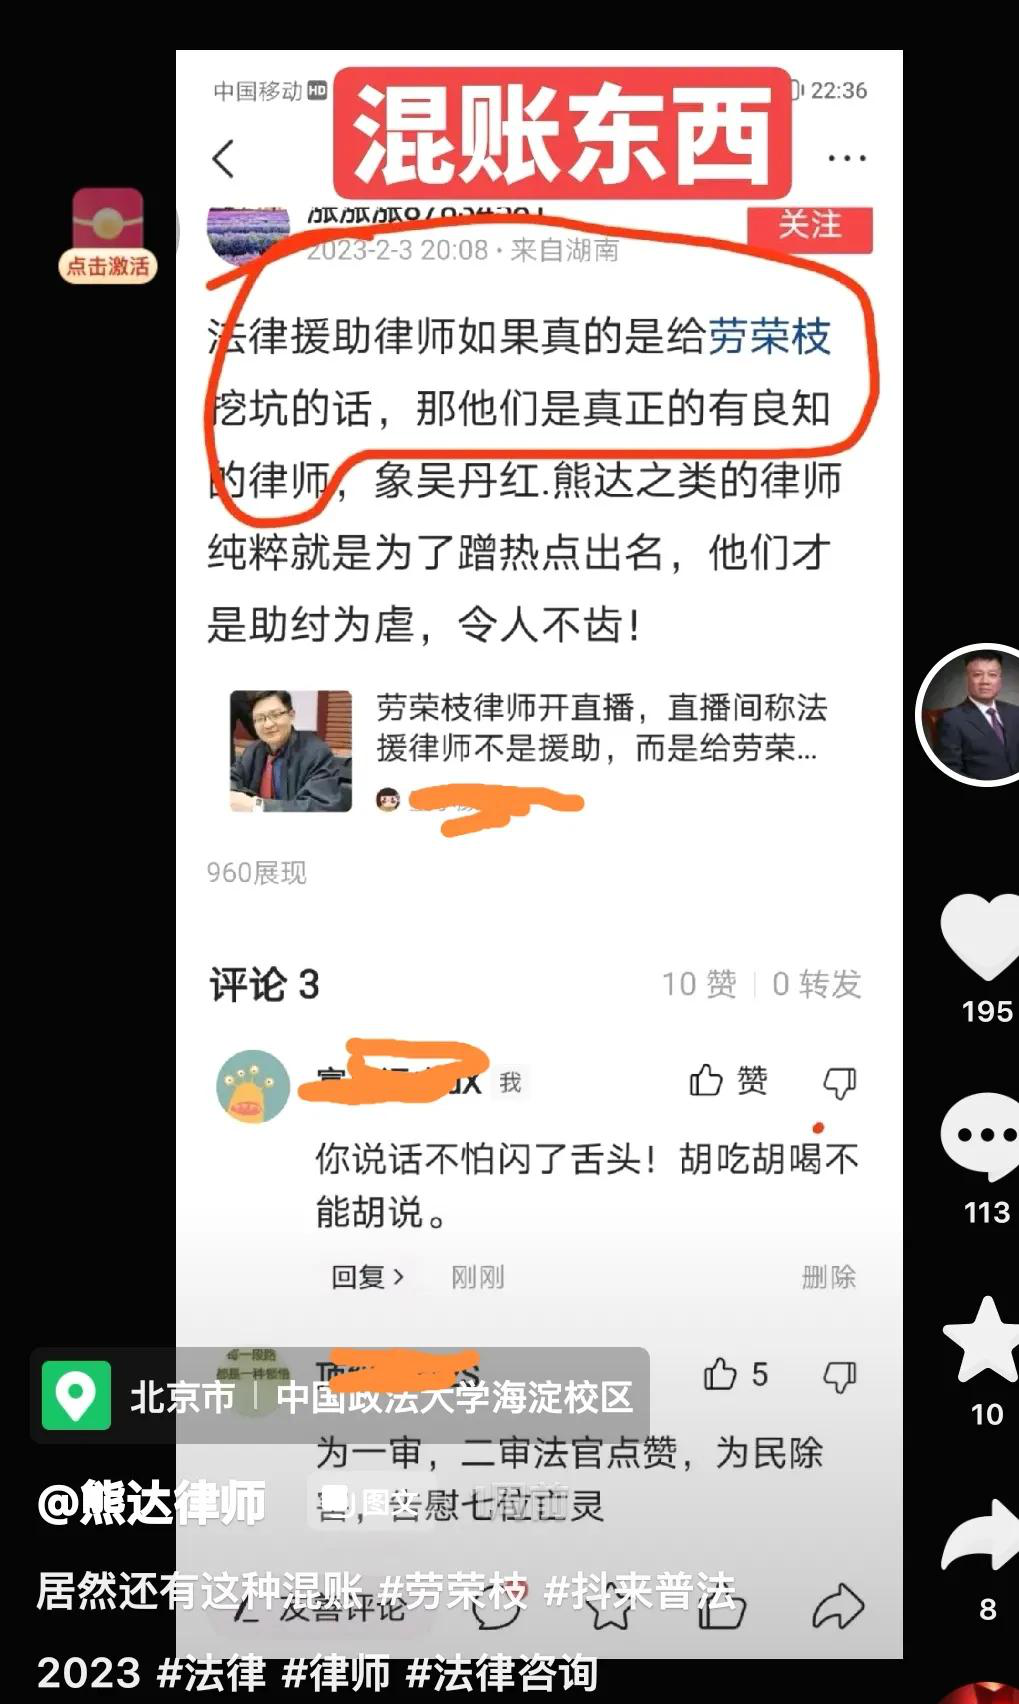 劳荣枝律师熊达说有人诽谤他，特意发声明澄清，并喊话要追责对方